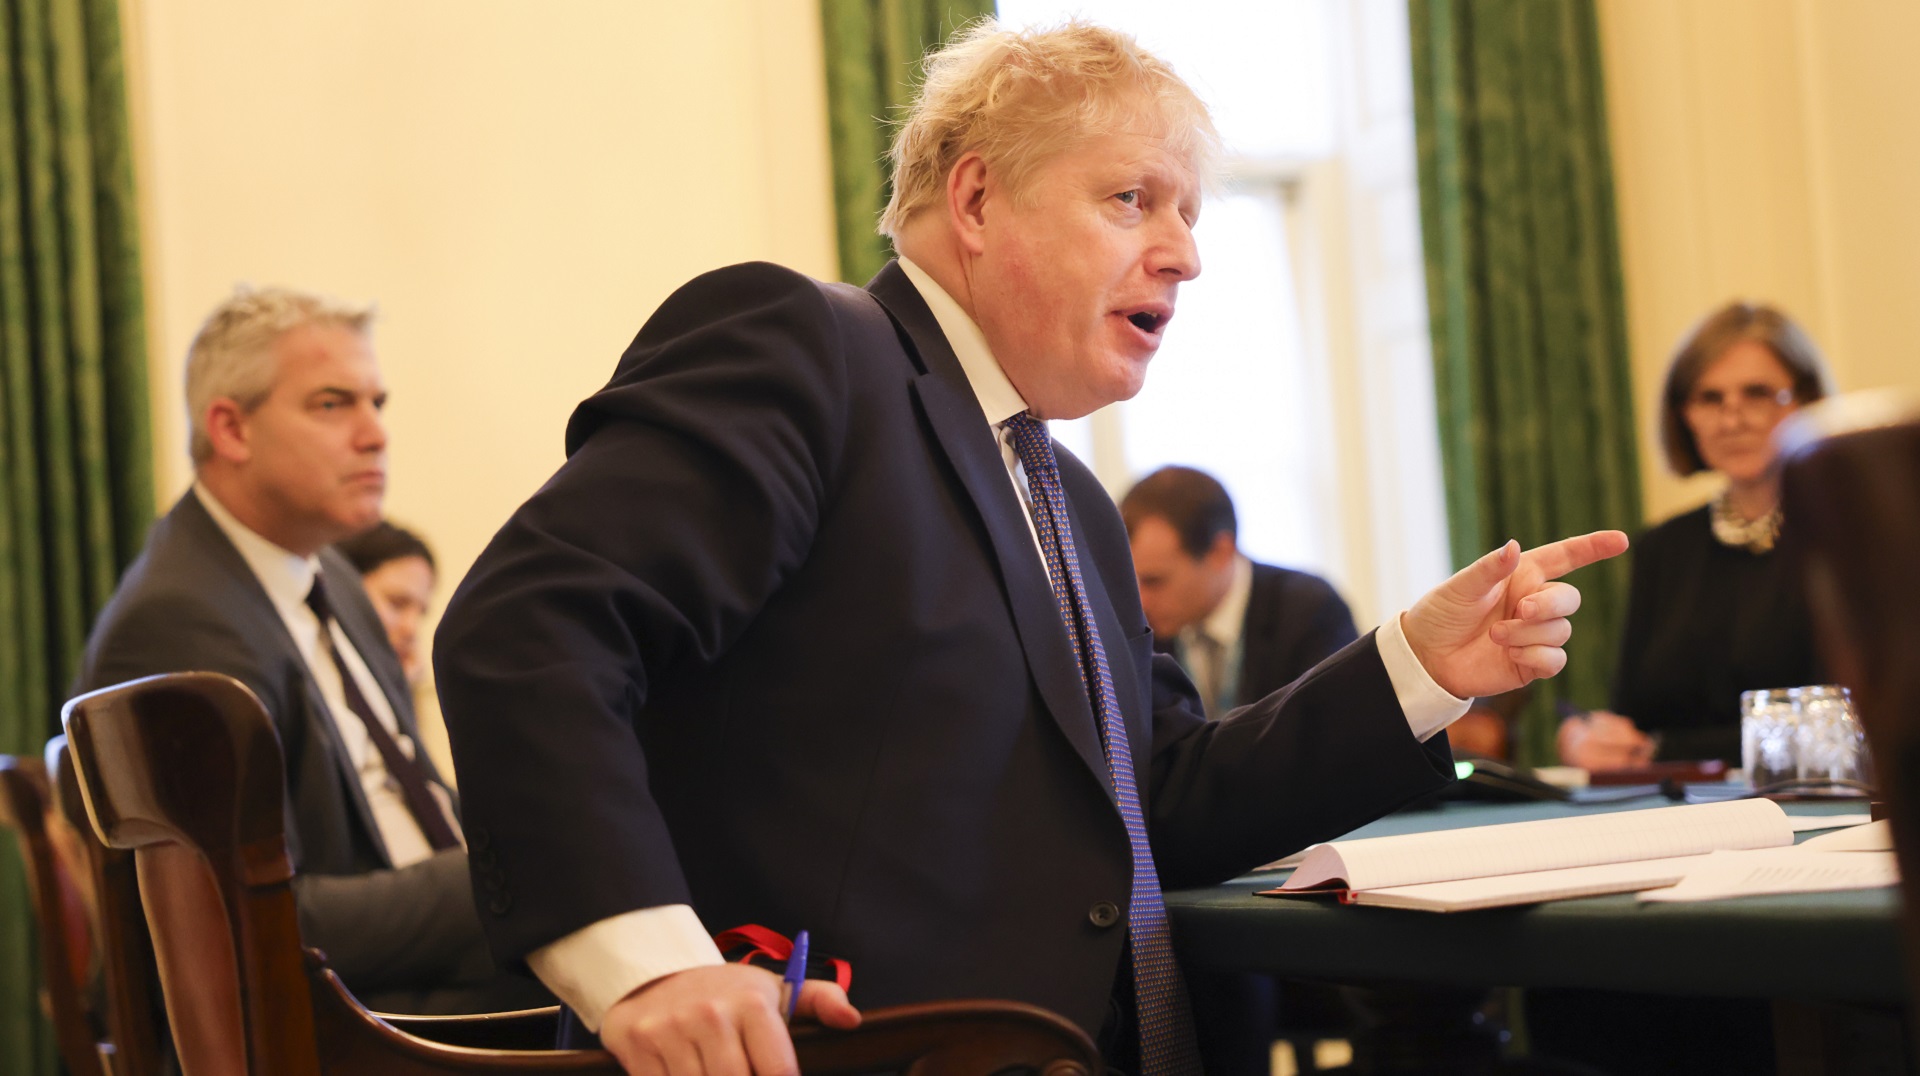 Boris Johnson is under fire over the Sue Gray report